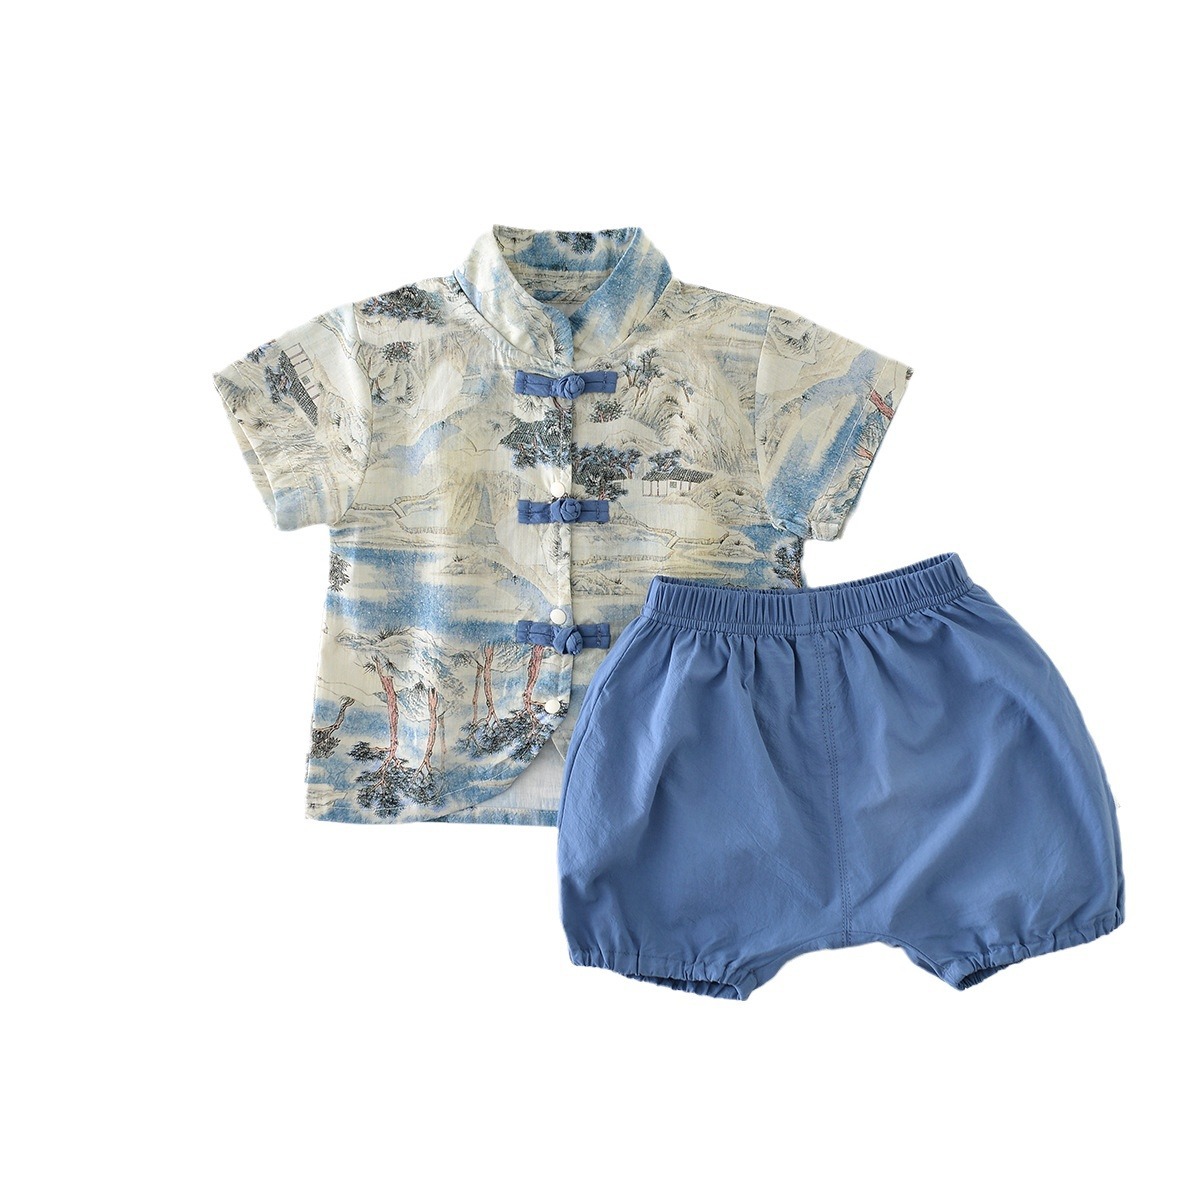 中国风夏季套装印花套装短袖短两件套宝宝男童汉服口夏装盘婴儿裤